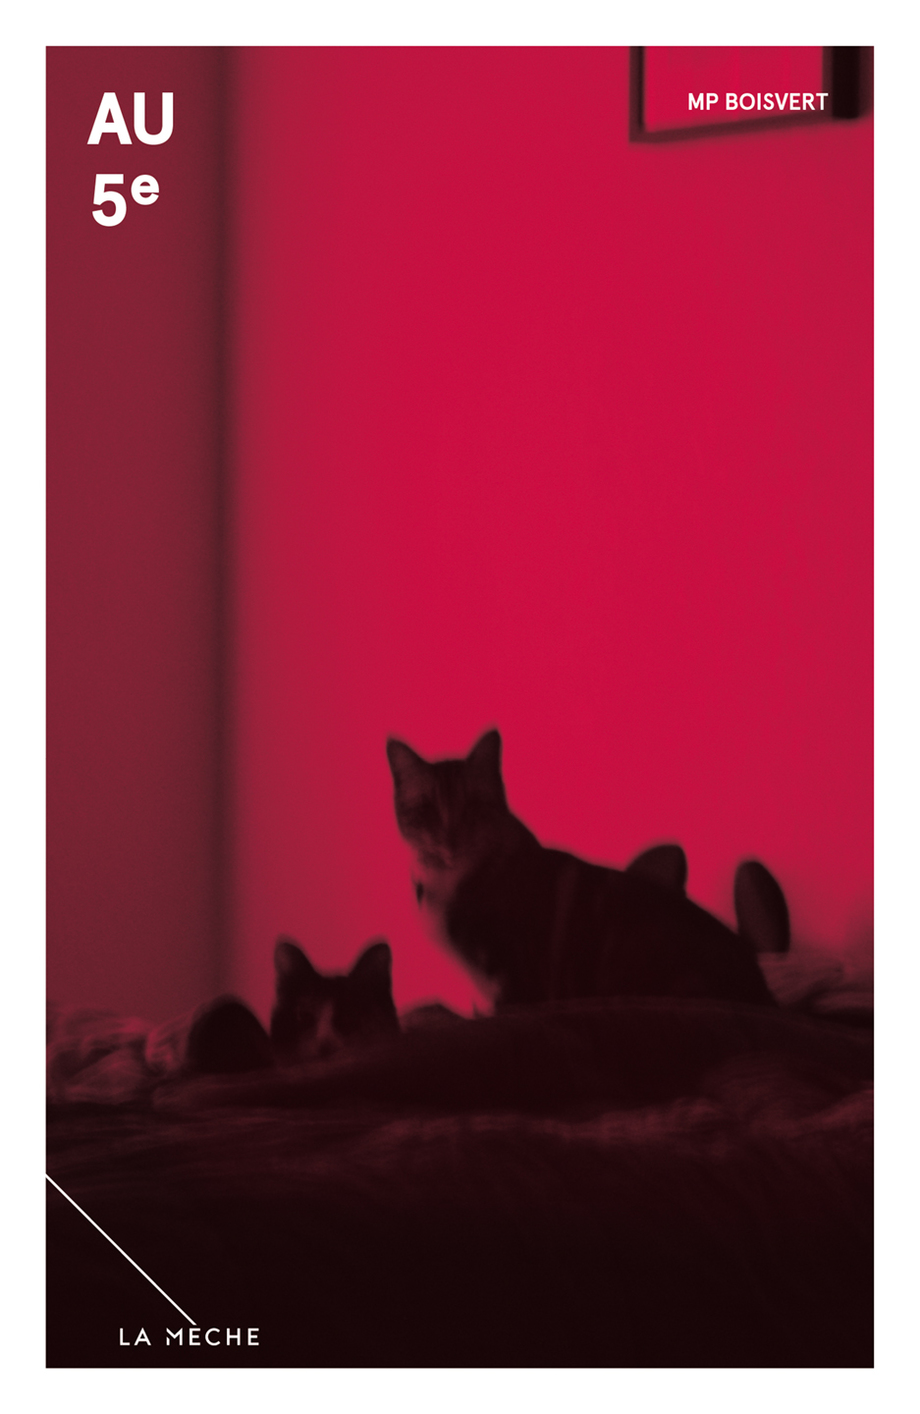 couverture de Au 5e de M.P. Boisvert, rose vif avec un chat